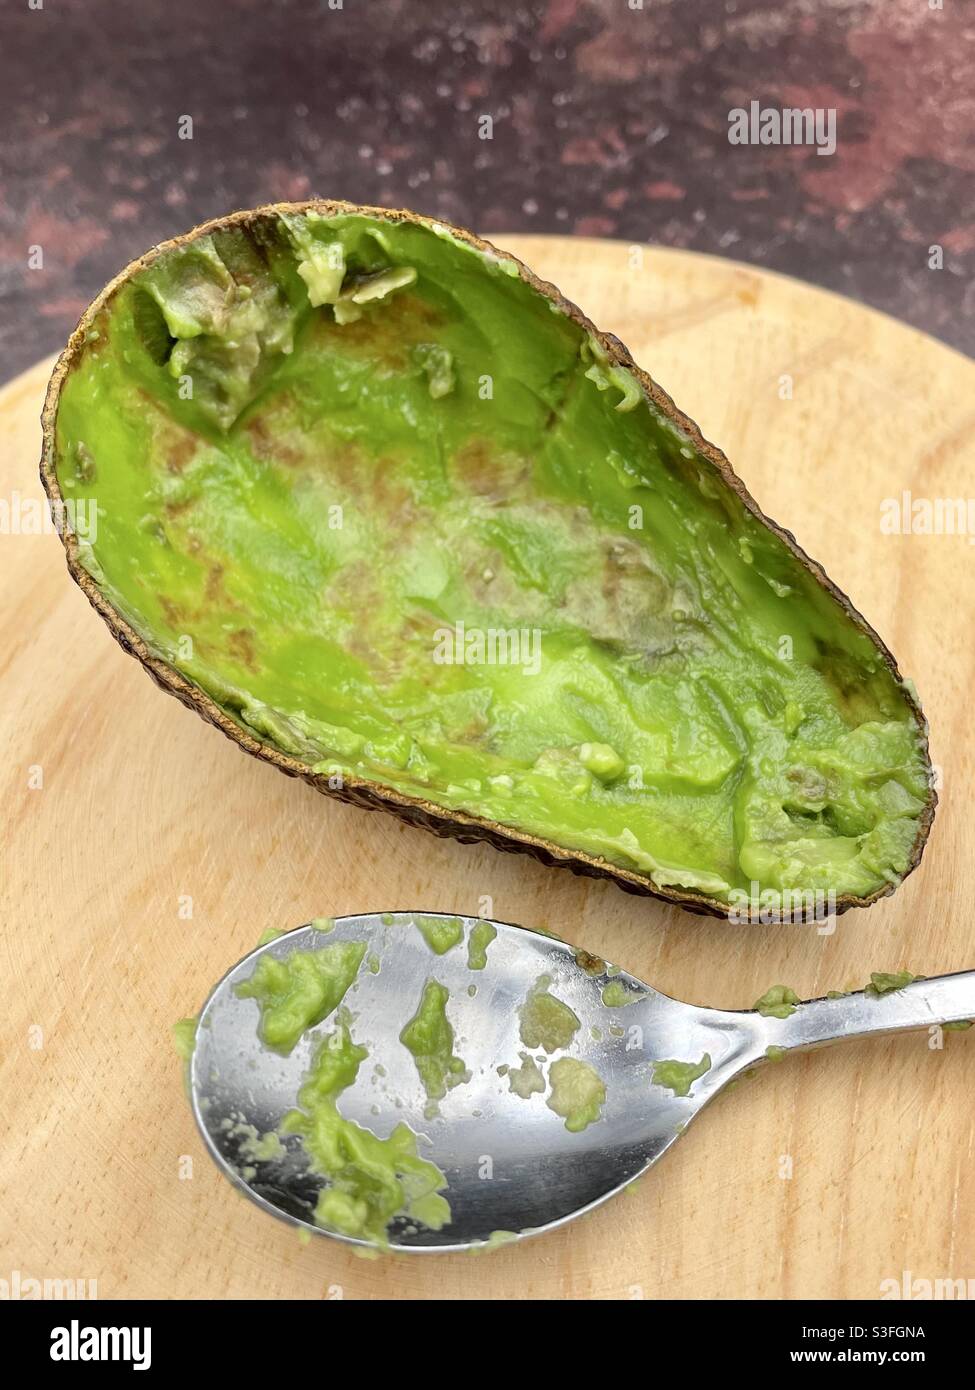 Mezzo avocado che è stato mangiato, su una tavola di legno e accanto ad un cucchiaio Foto Stock